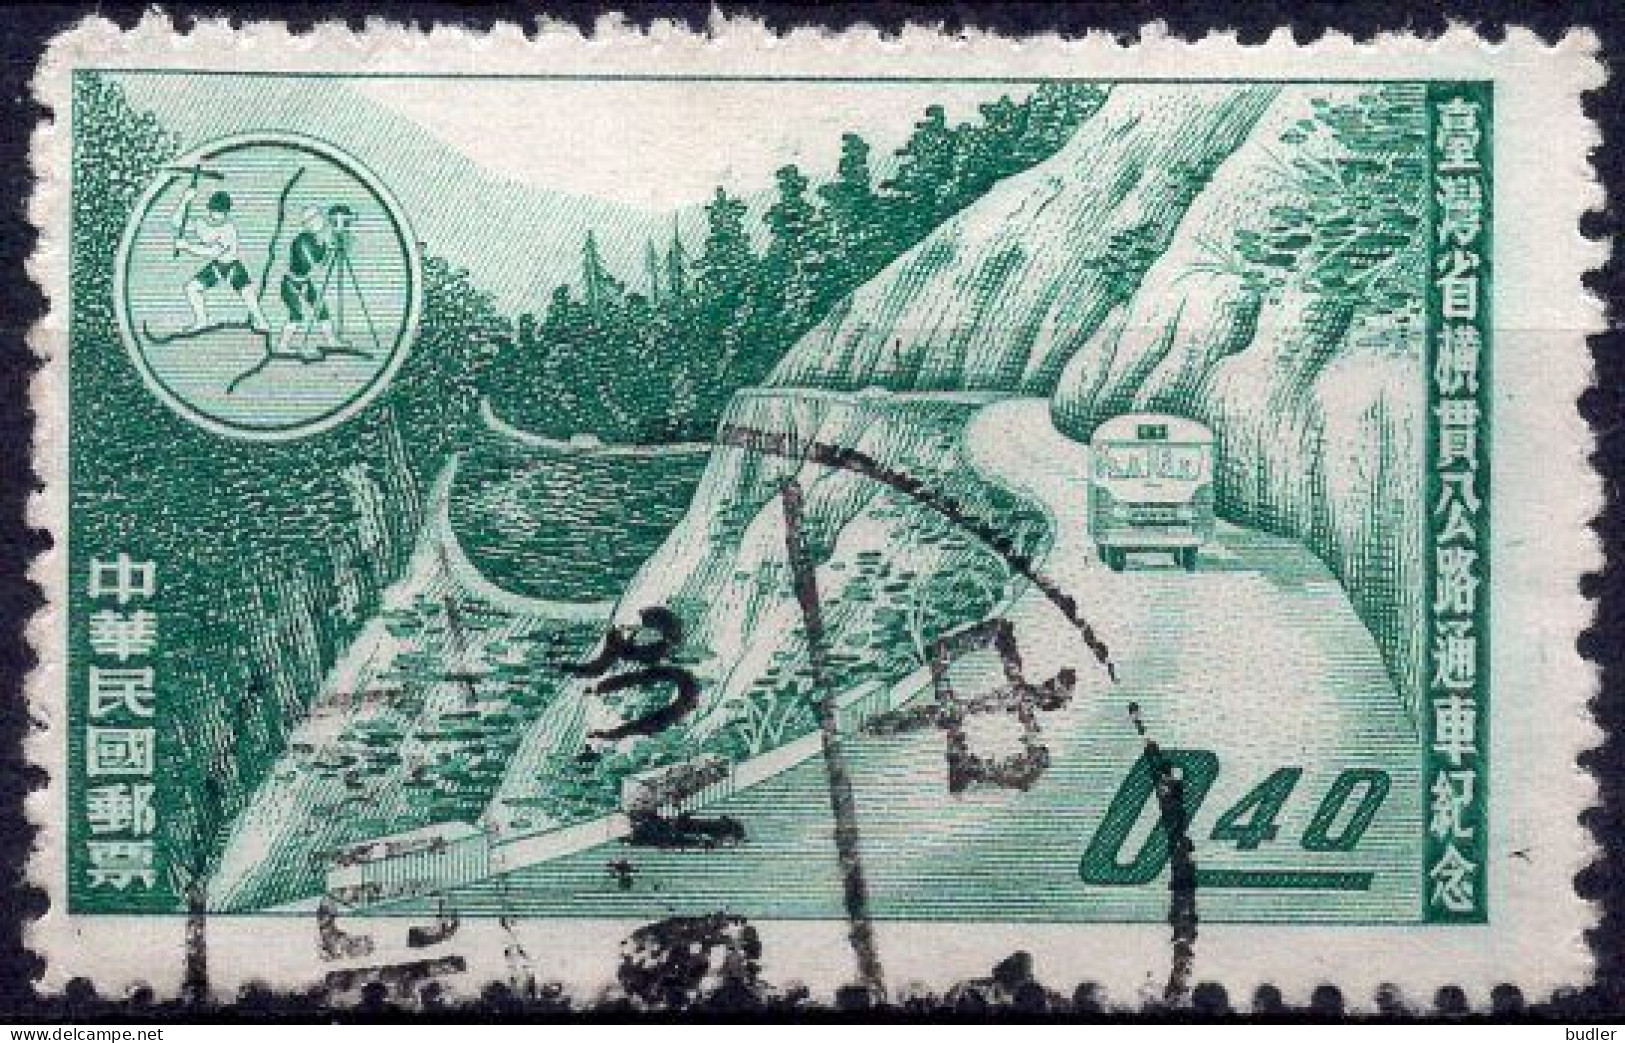 TAIWAN (= Formosa) :1960: Y.320 : Inauguration De La Route Transversale Est-Ouest.  Gestempeld / Oblitéré / Cancelled. - Used Stamps